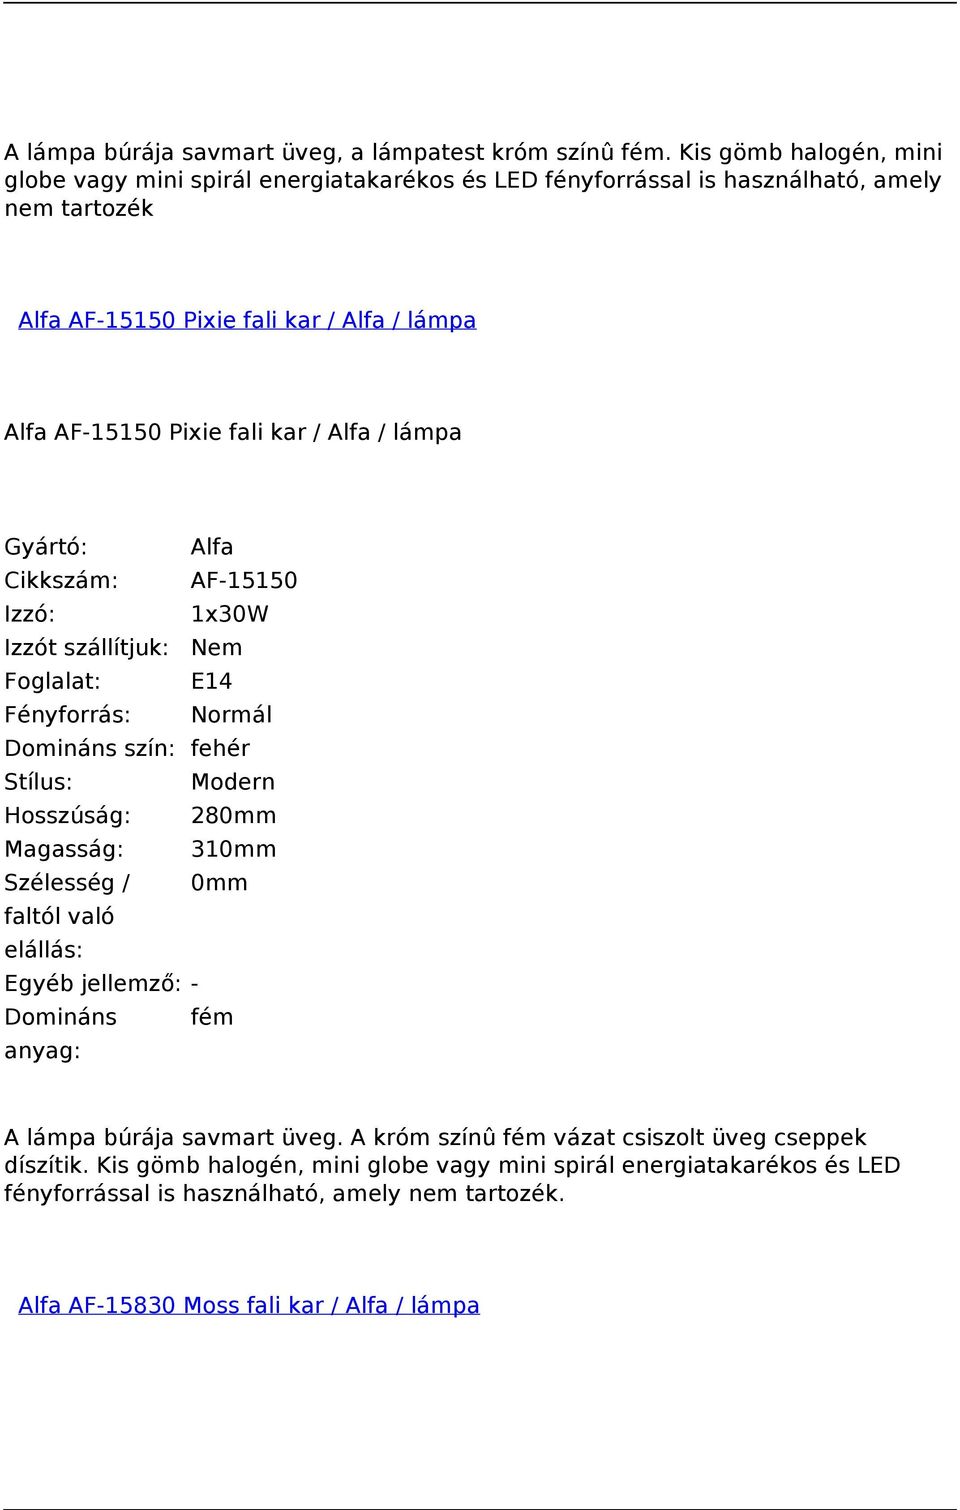 Alfa AF-15150 Pixie fali kar / Alfa / lámpa Gyártó: Alfa Cikkszám: AF-15150 Izzó: 1x30W Foglalat: E14 Domináns szín: fehér Stílus: Modern Hosszúság: 280mm Magasság: